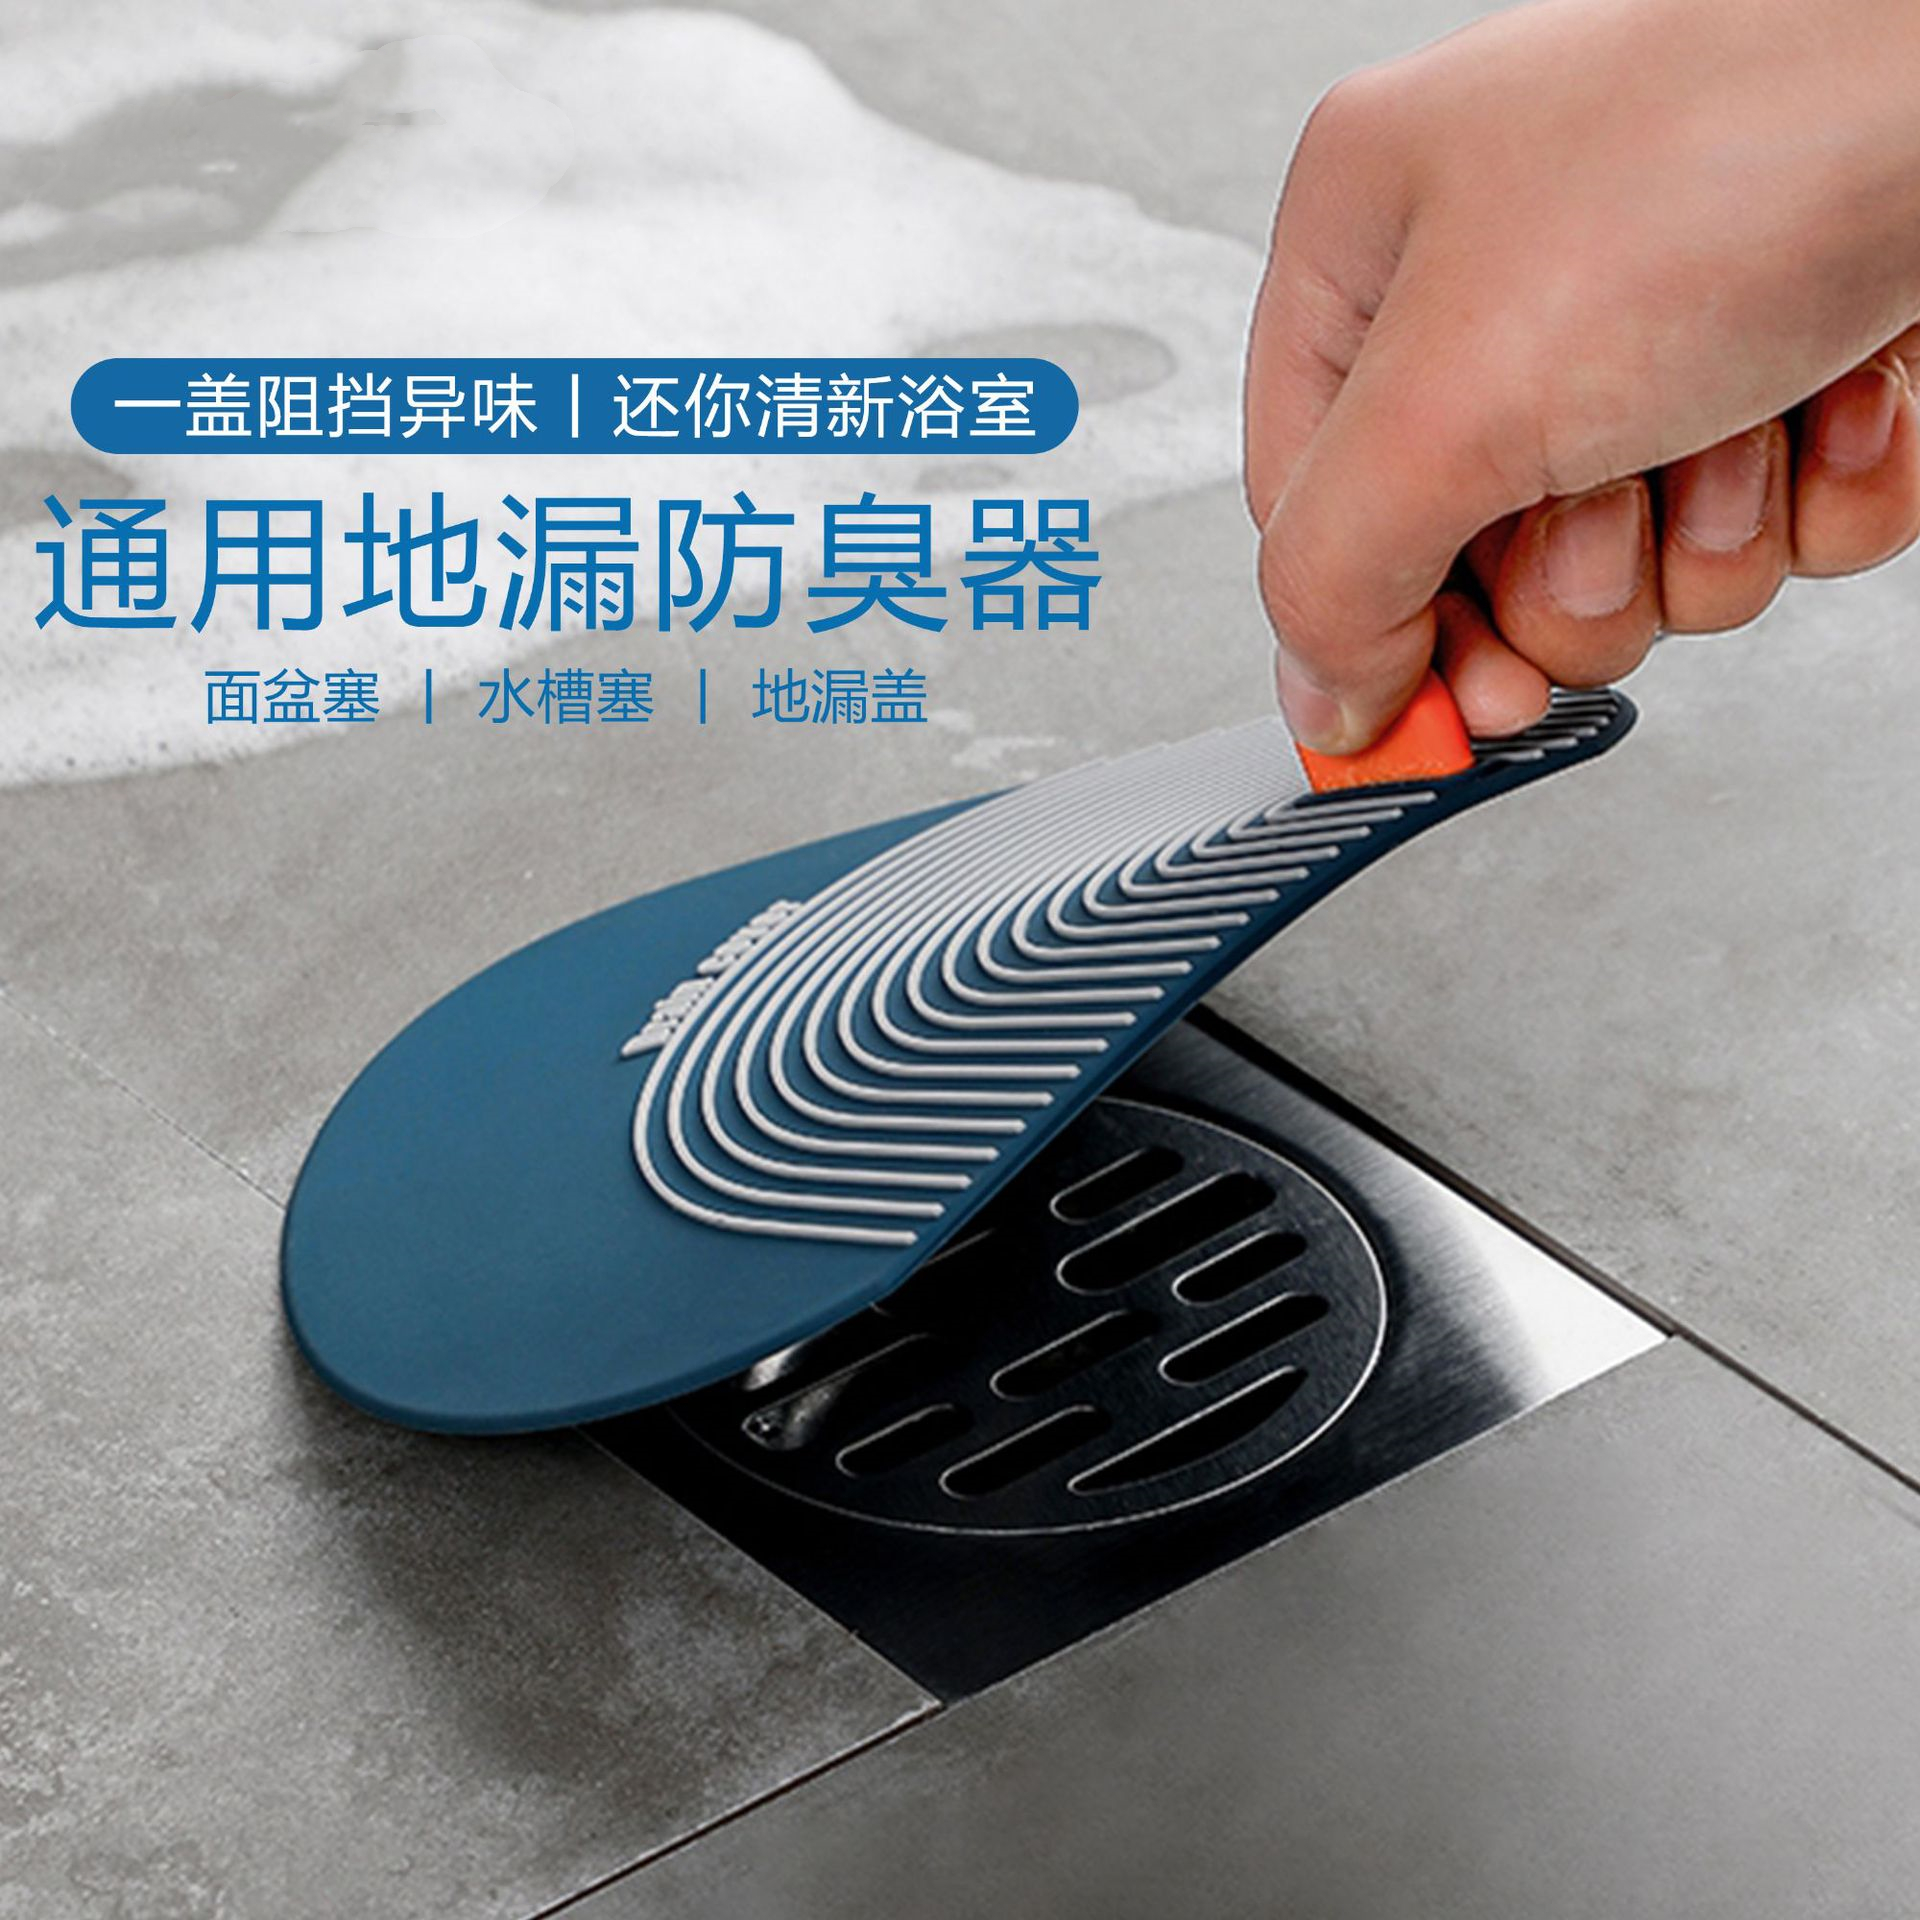 硅胶下水道地漏防臭器卫生间防臭垫厨房水塞防反味虫防臭地漏盖子